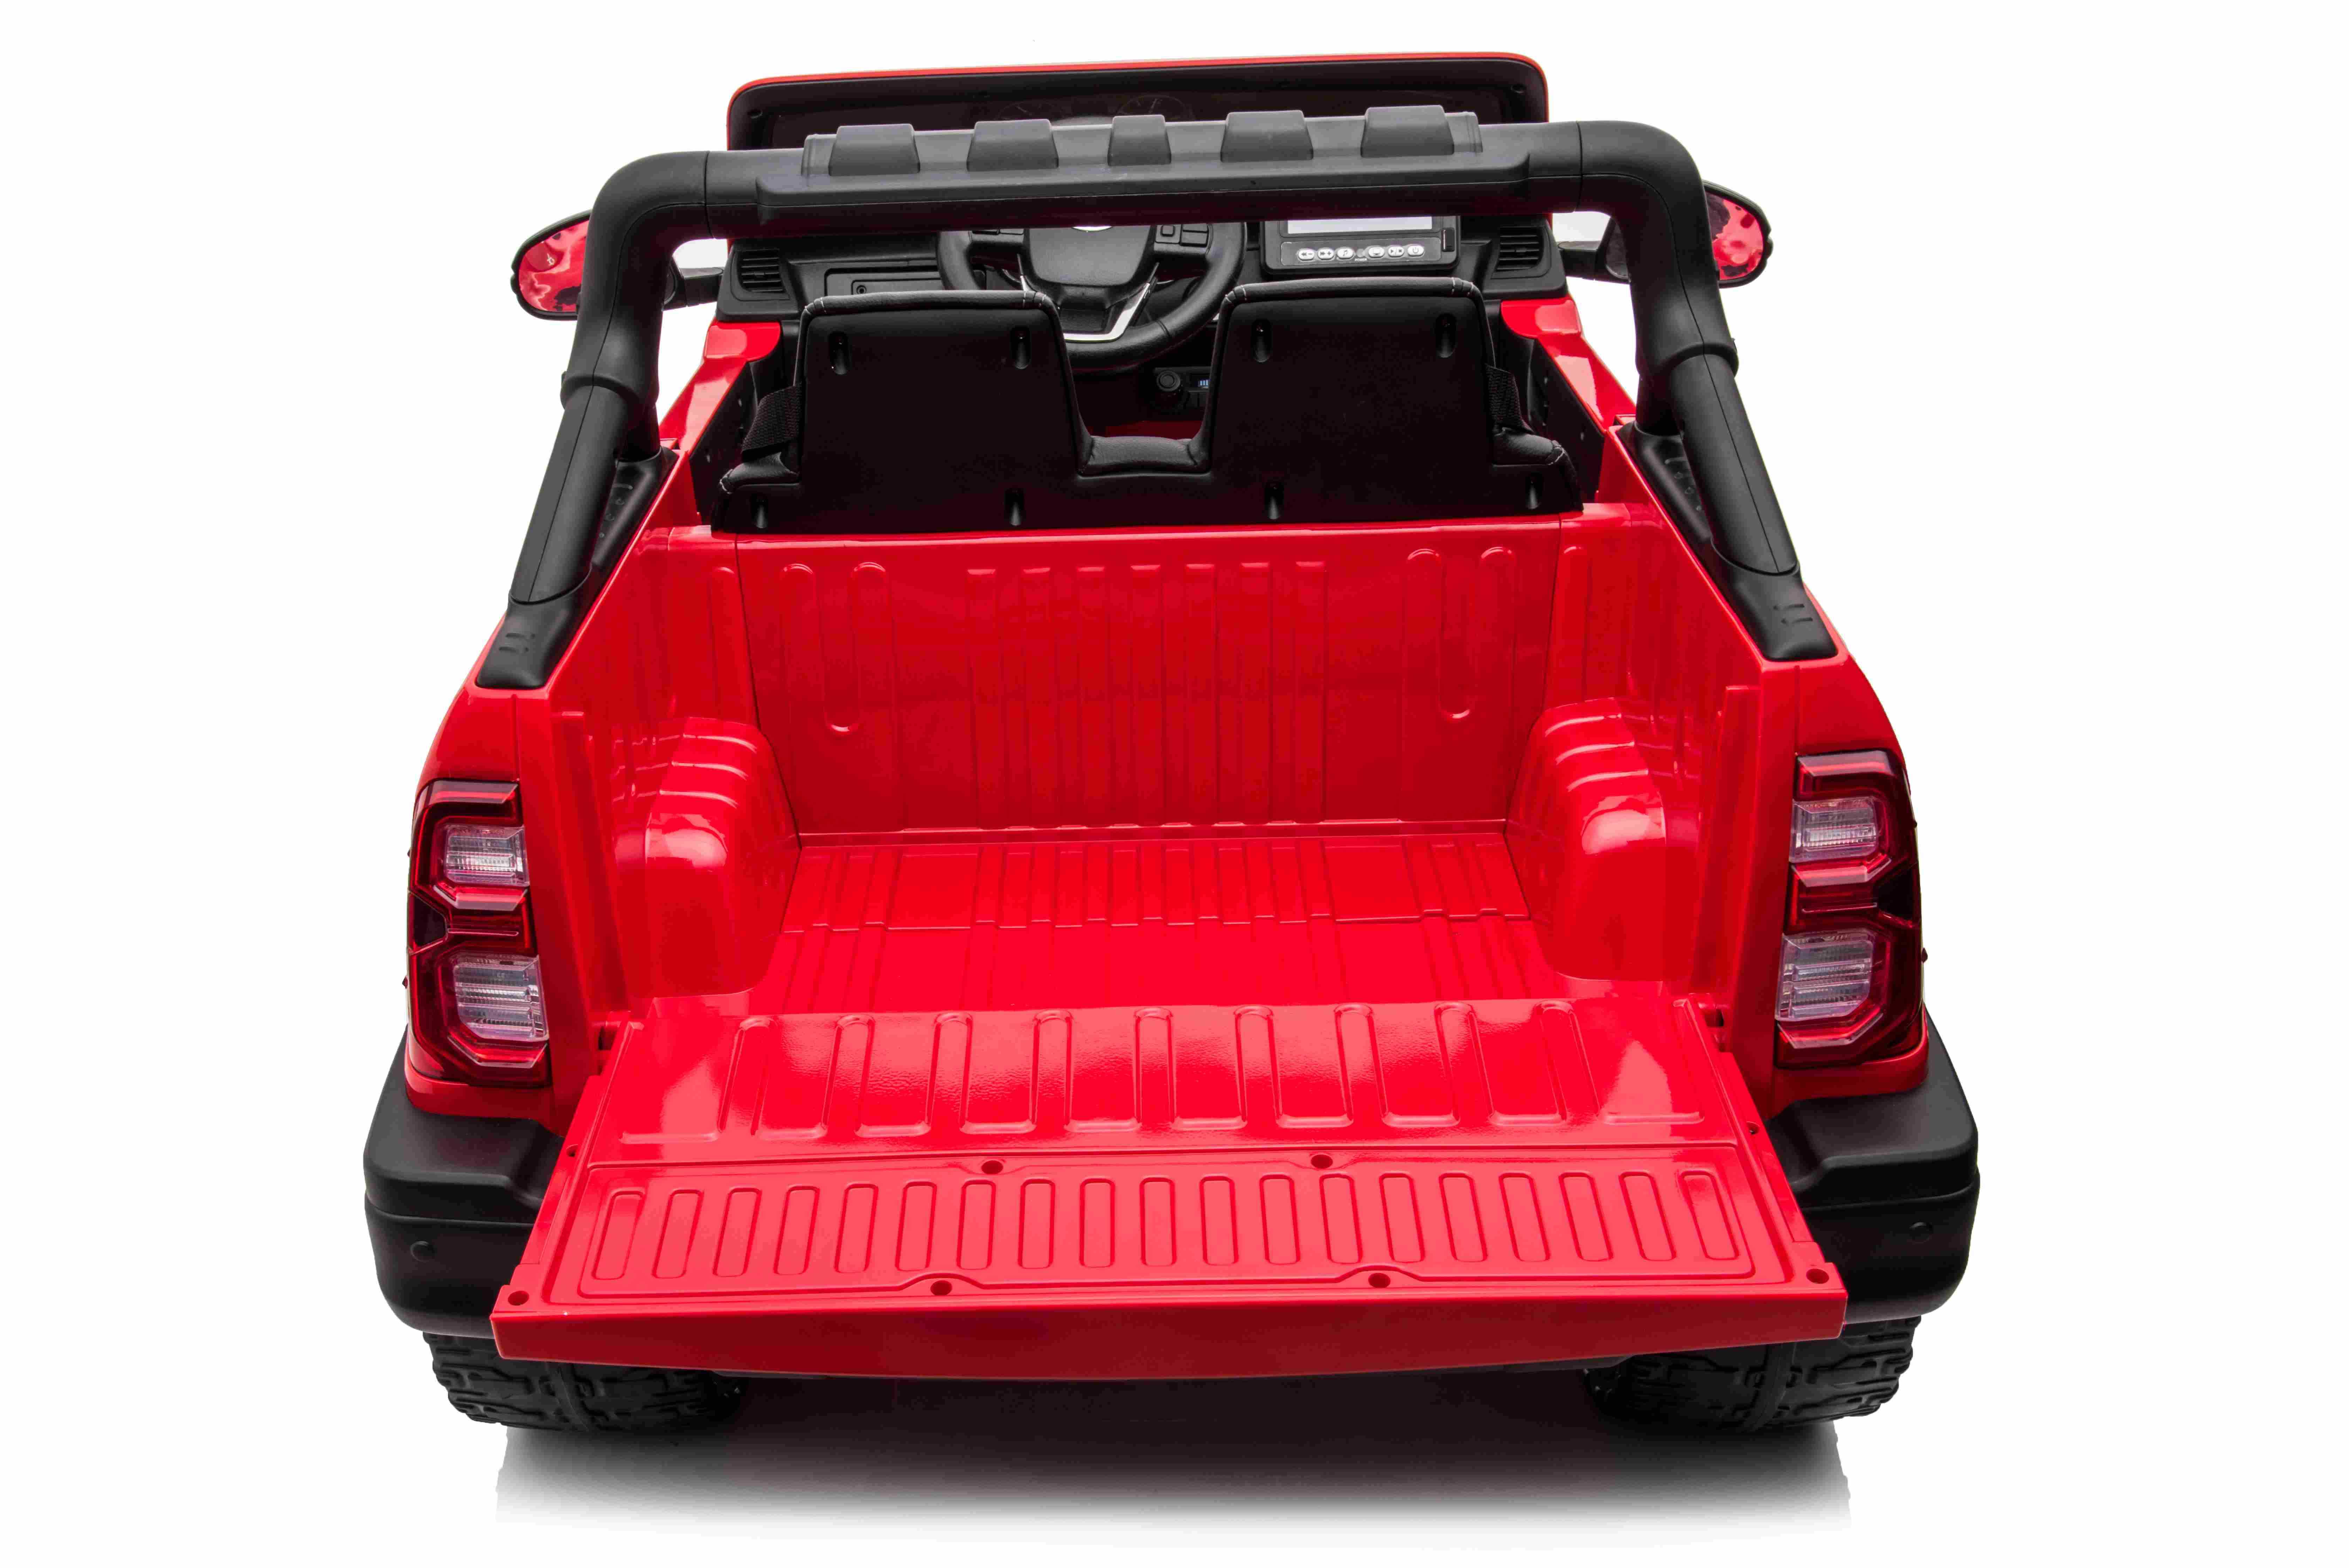 Vienvietis elektromobilis Toyota Hillux, raudonas